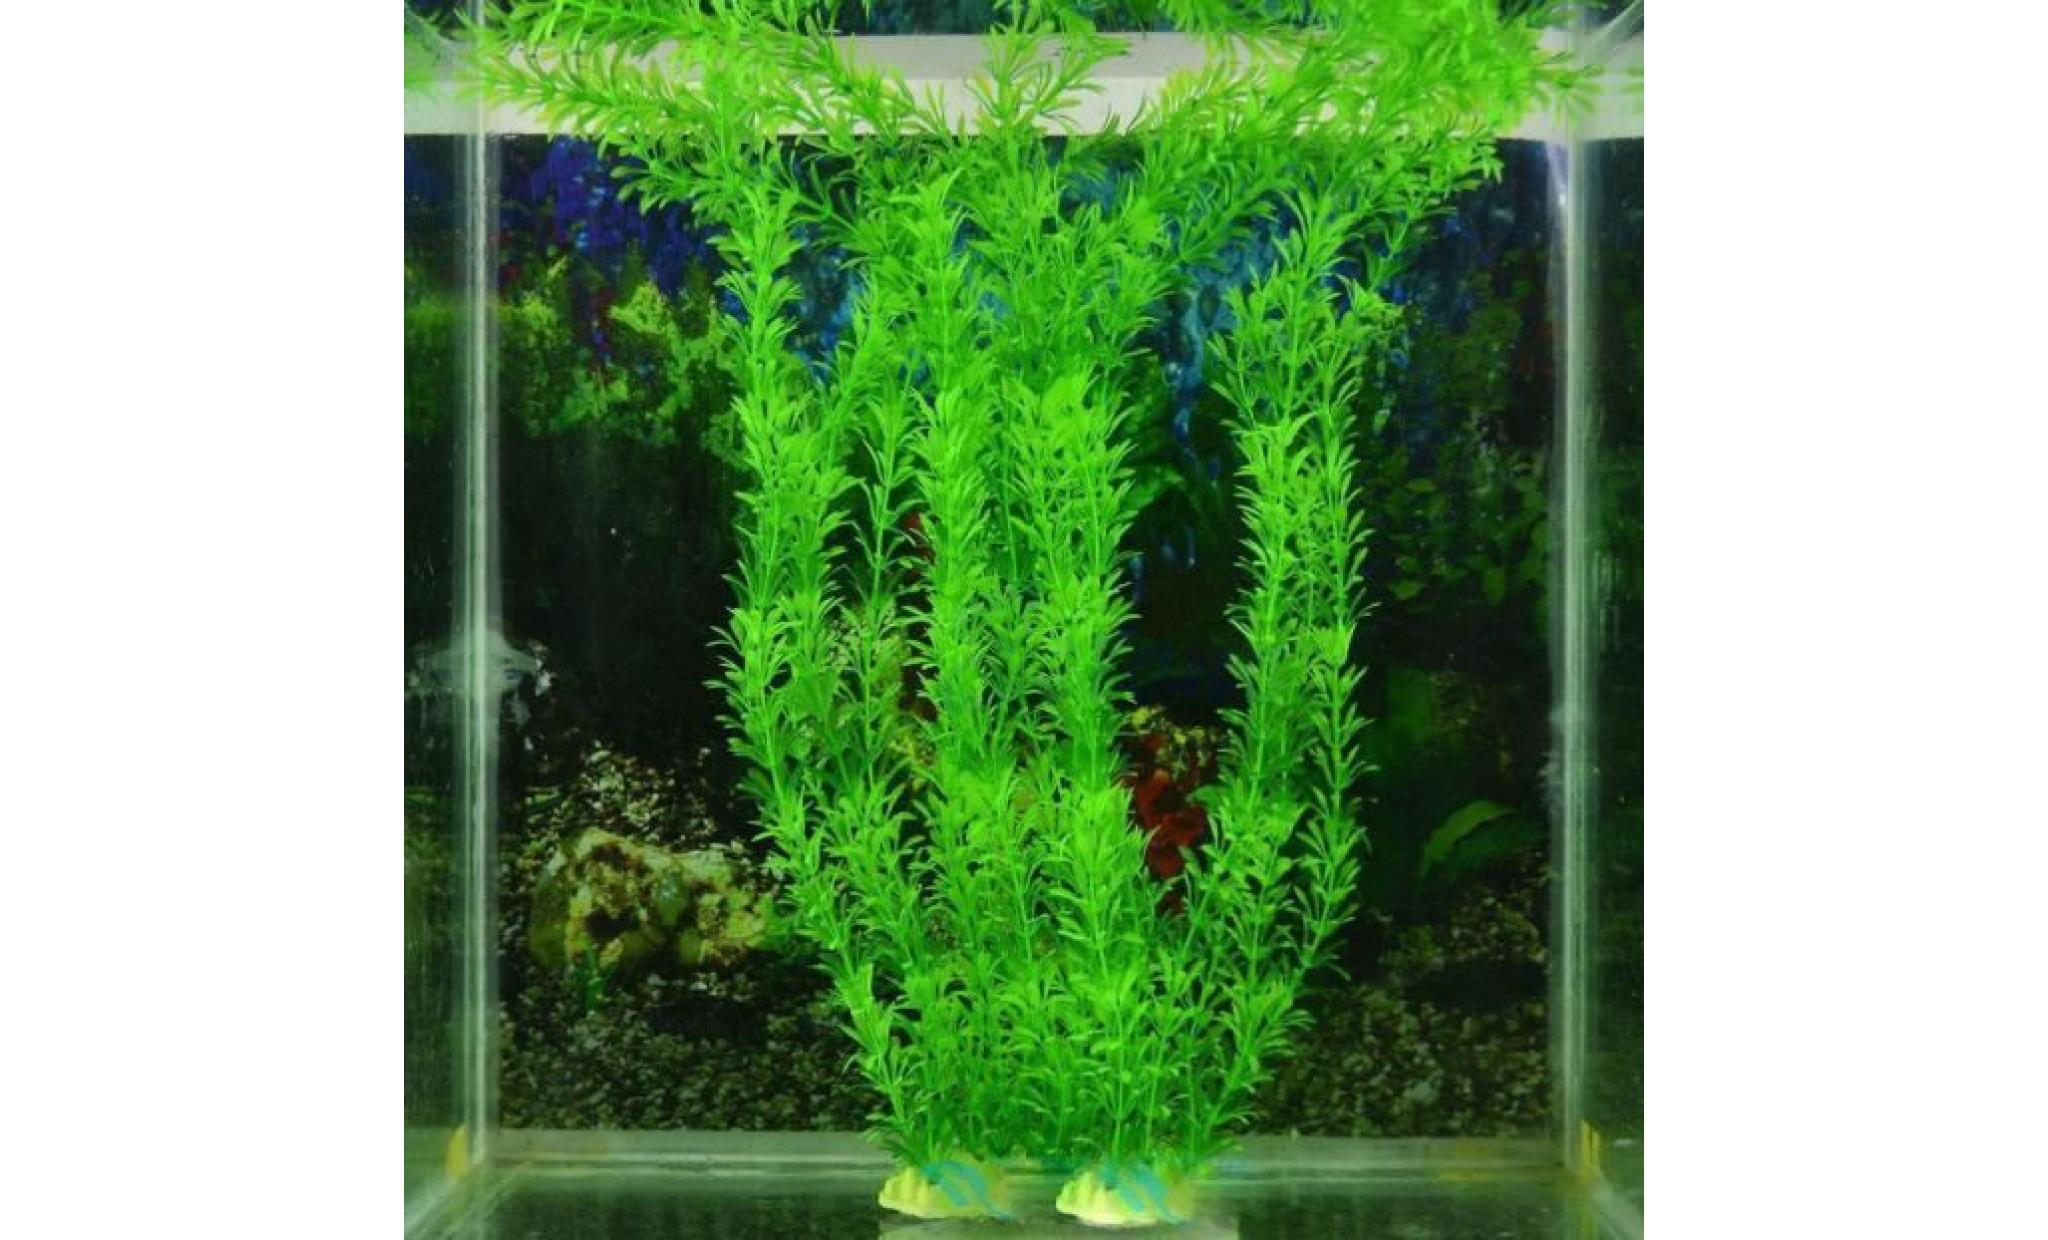 veberge@ livraison gratuite 13 plastique gazon artificiel réservoir de poissons d'eau décoration hg51